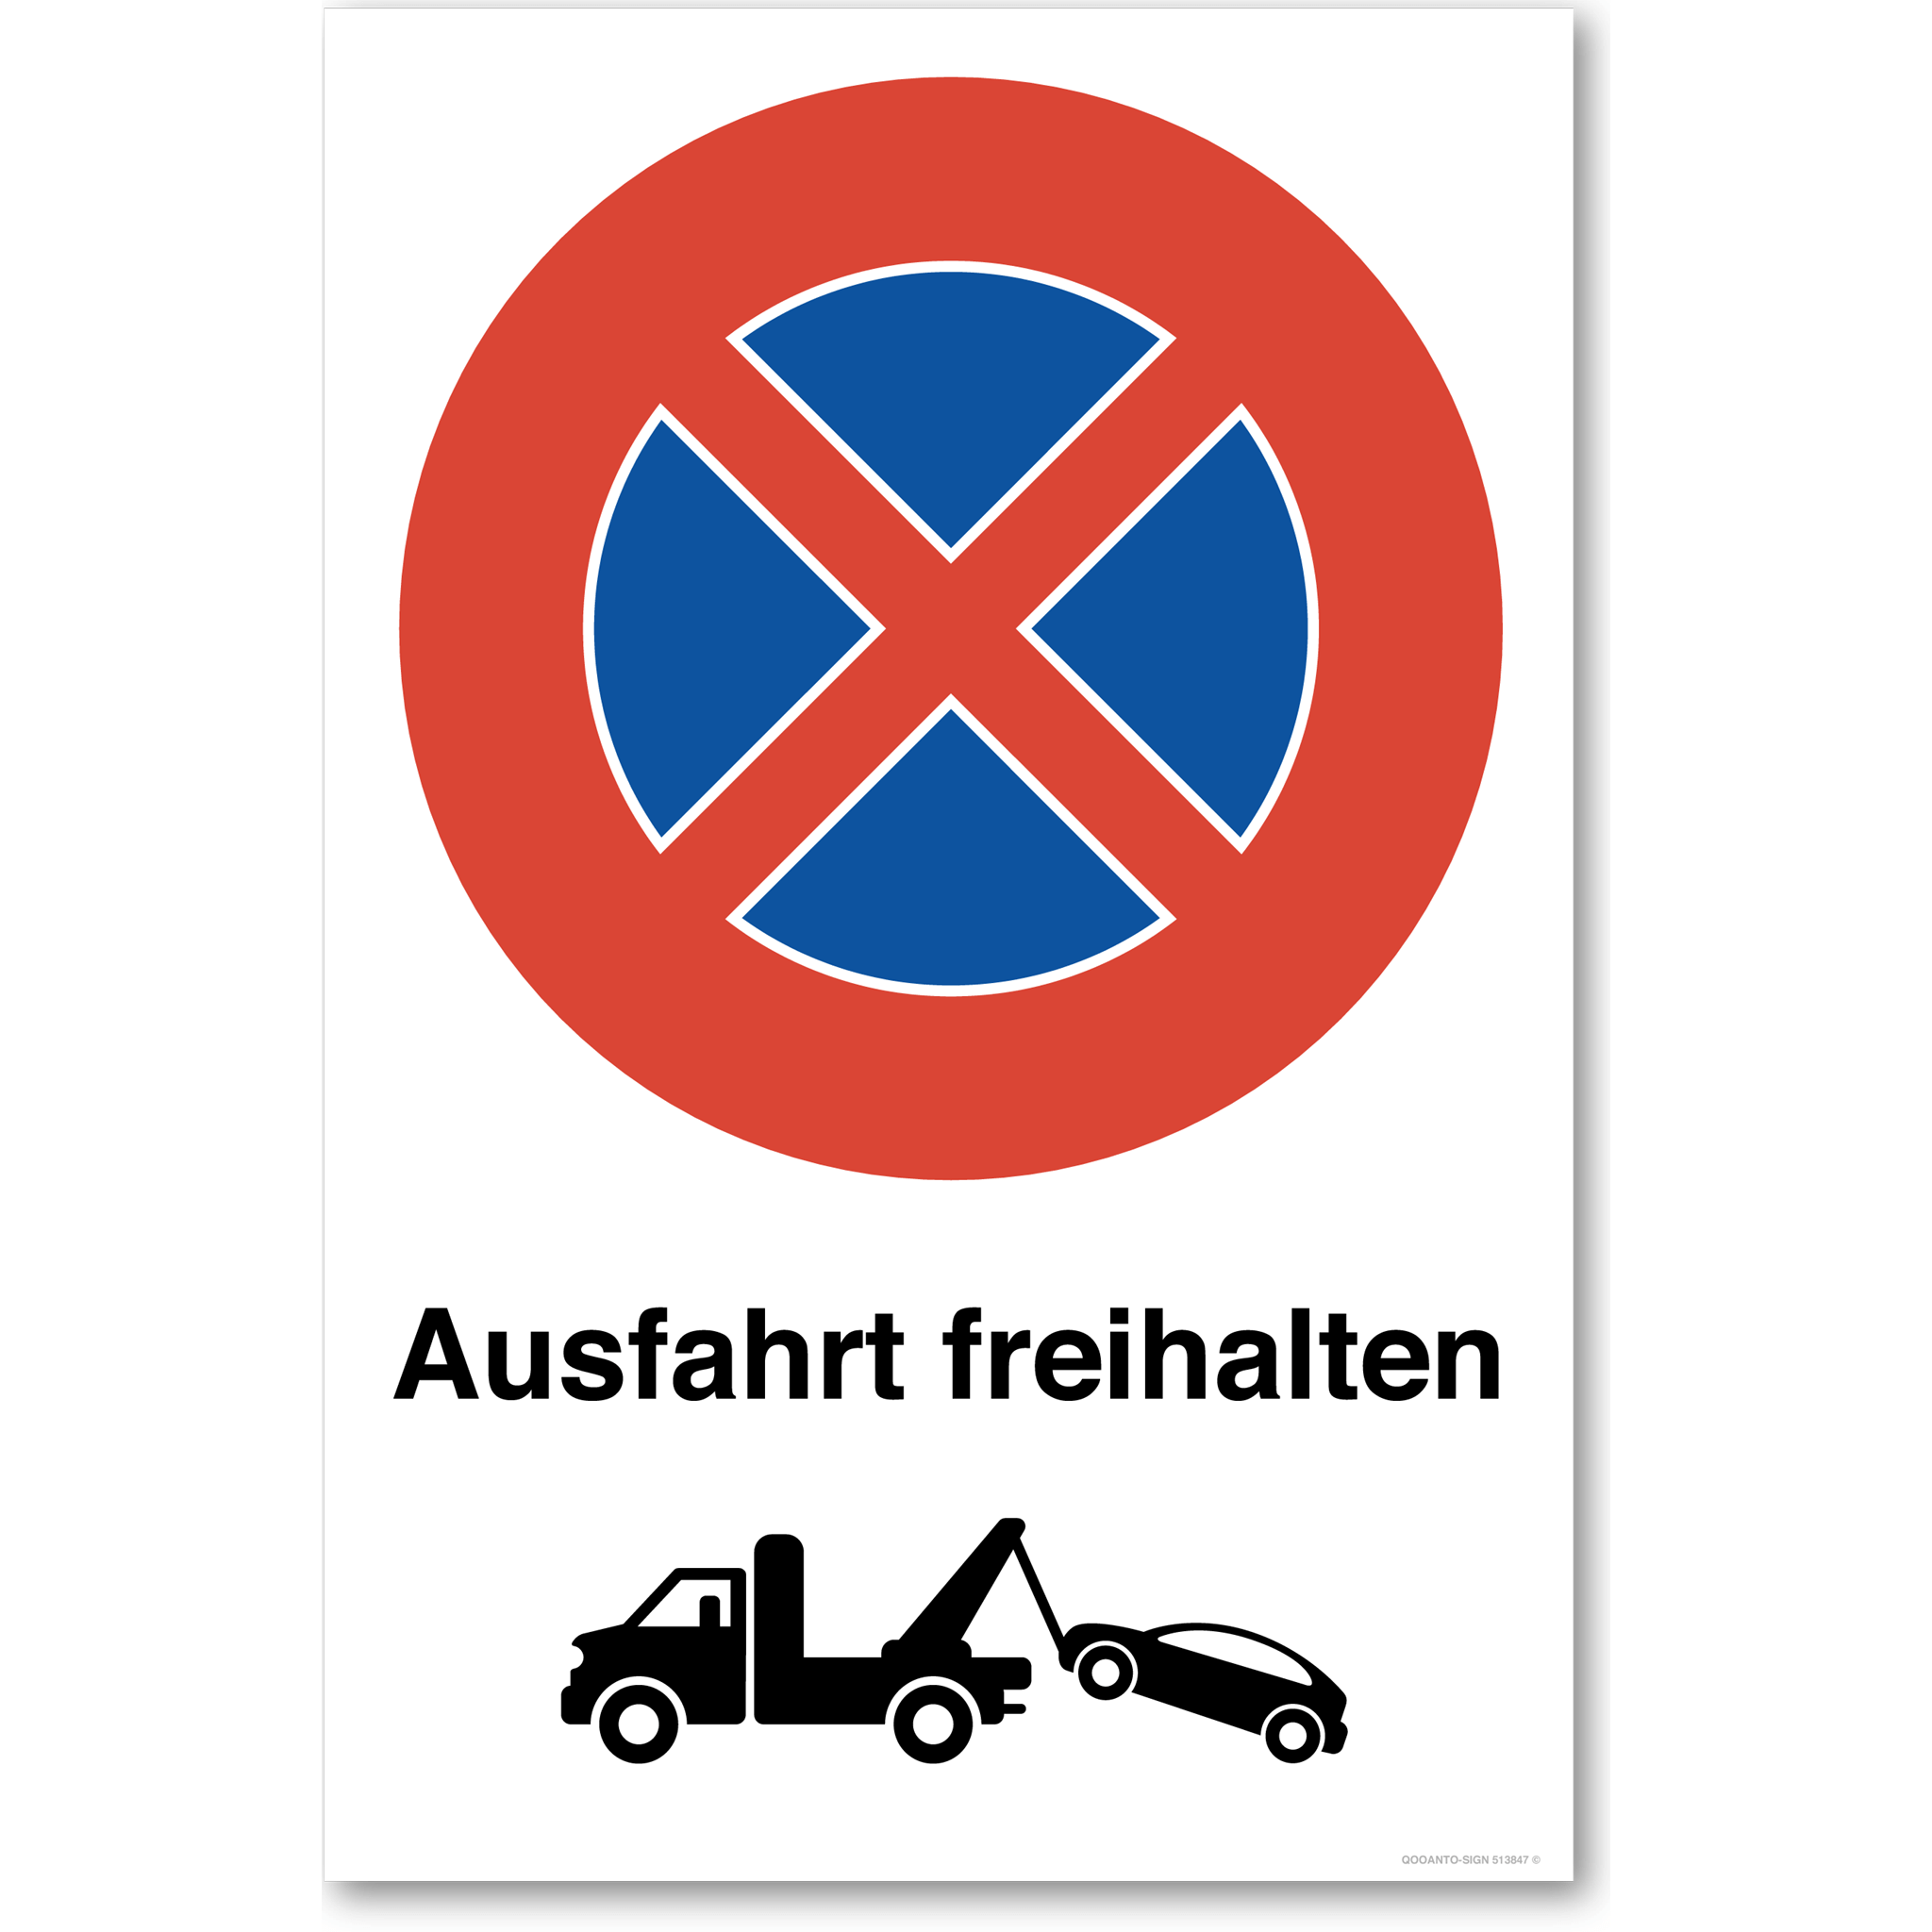 Ausfahrt freihalten mit Abschleppwagen - Halten verboten - Parkverbotsschild hochformat